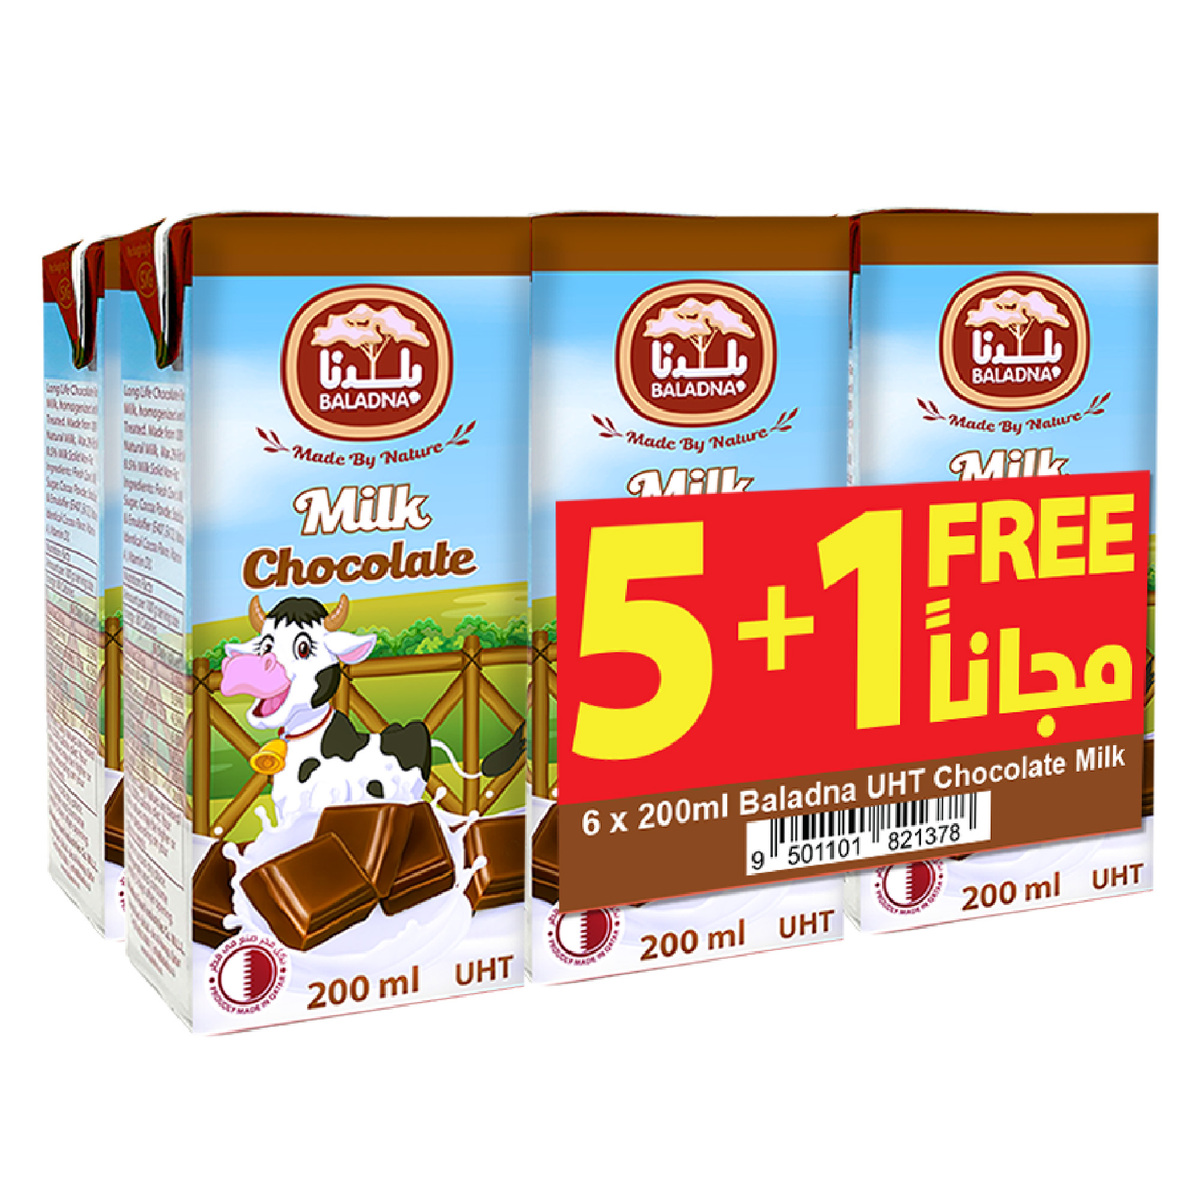 Baladna Chocolate Uht Milk Drink 6 X 200 Ml Online At Best Price Uht Flavoured Milk Drink